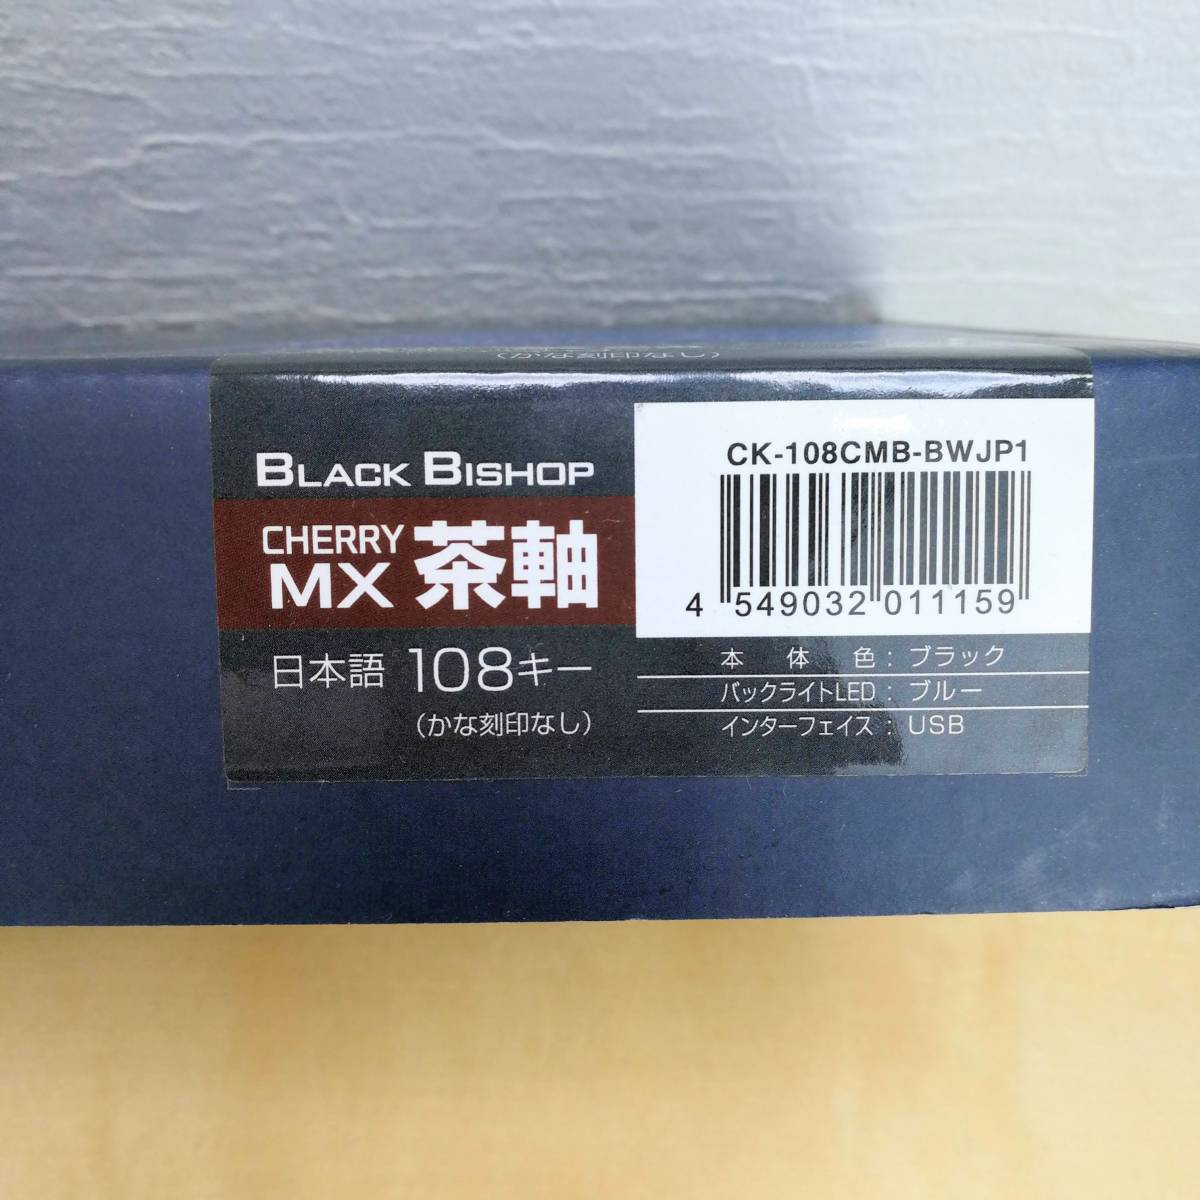 センチュリー CHERRYメカニカルキーボード 108キー/日本語配列 『BLACK BISHOP 茶軸』 CK-108CMB-BWJP1  (中古品)｜PayPayフリマ